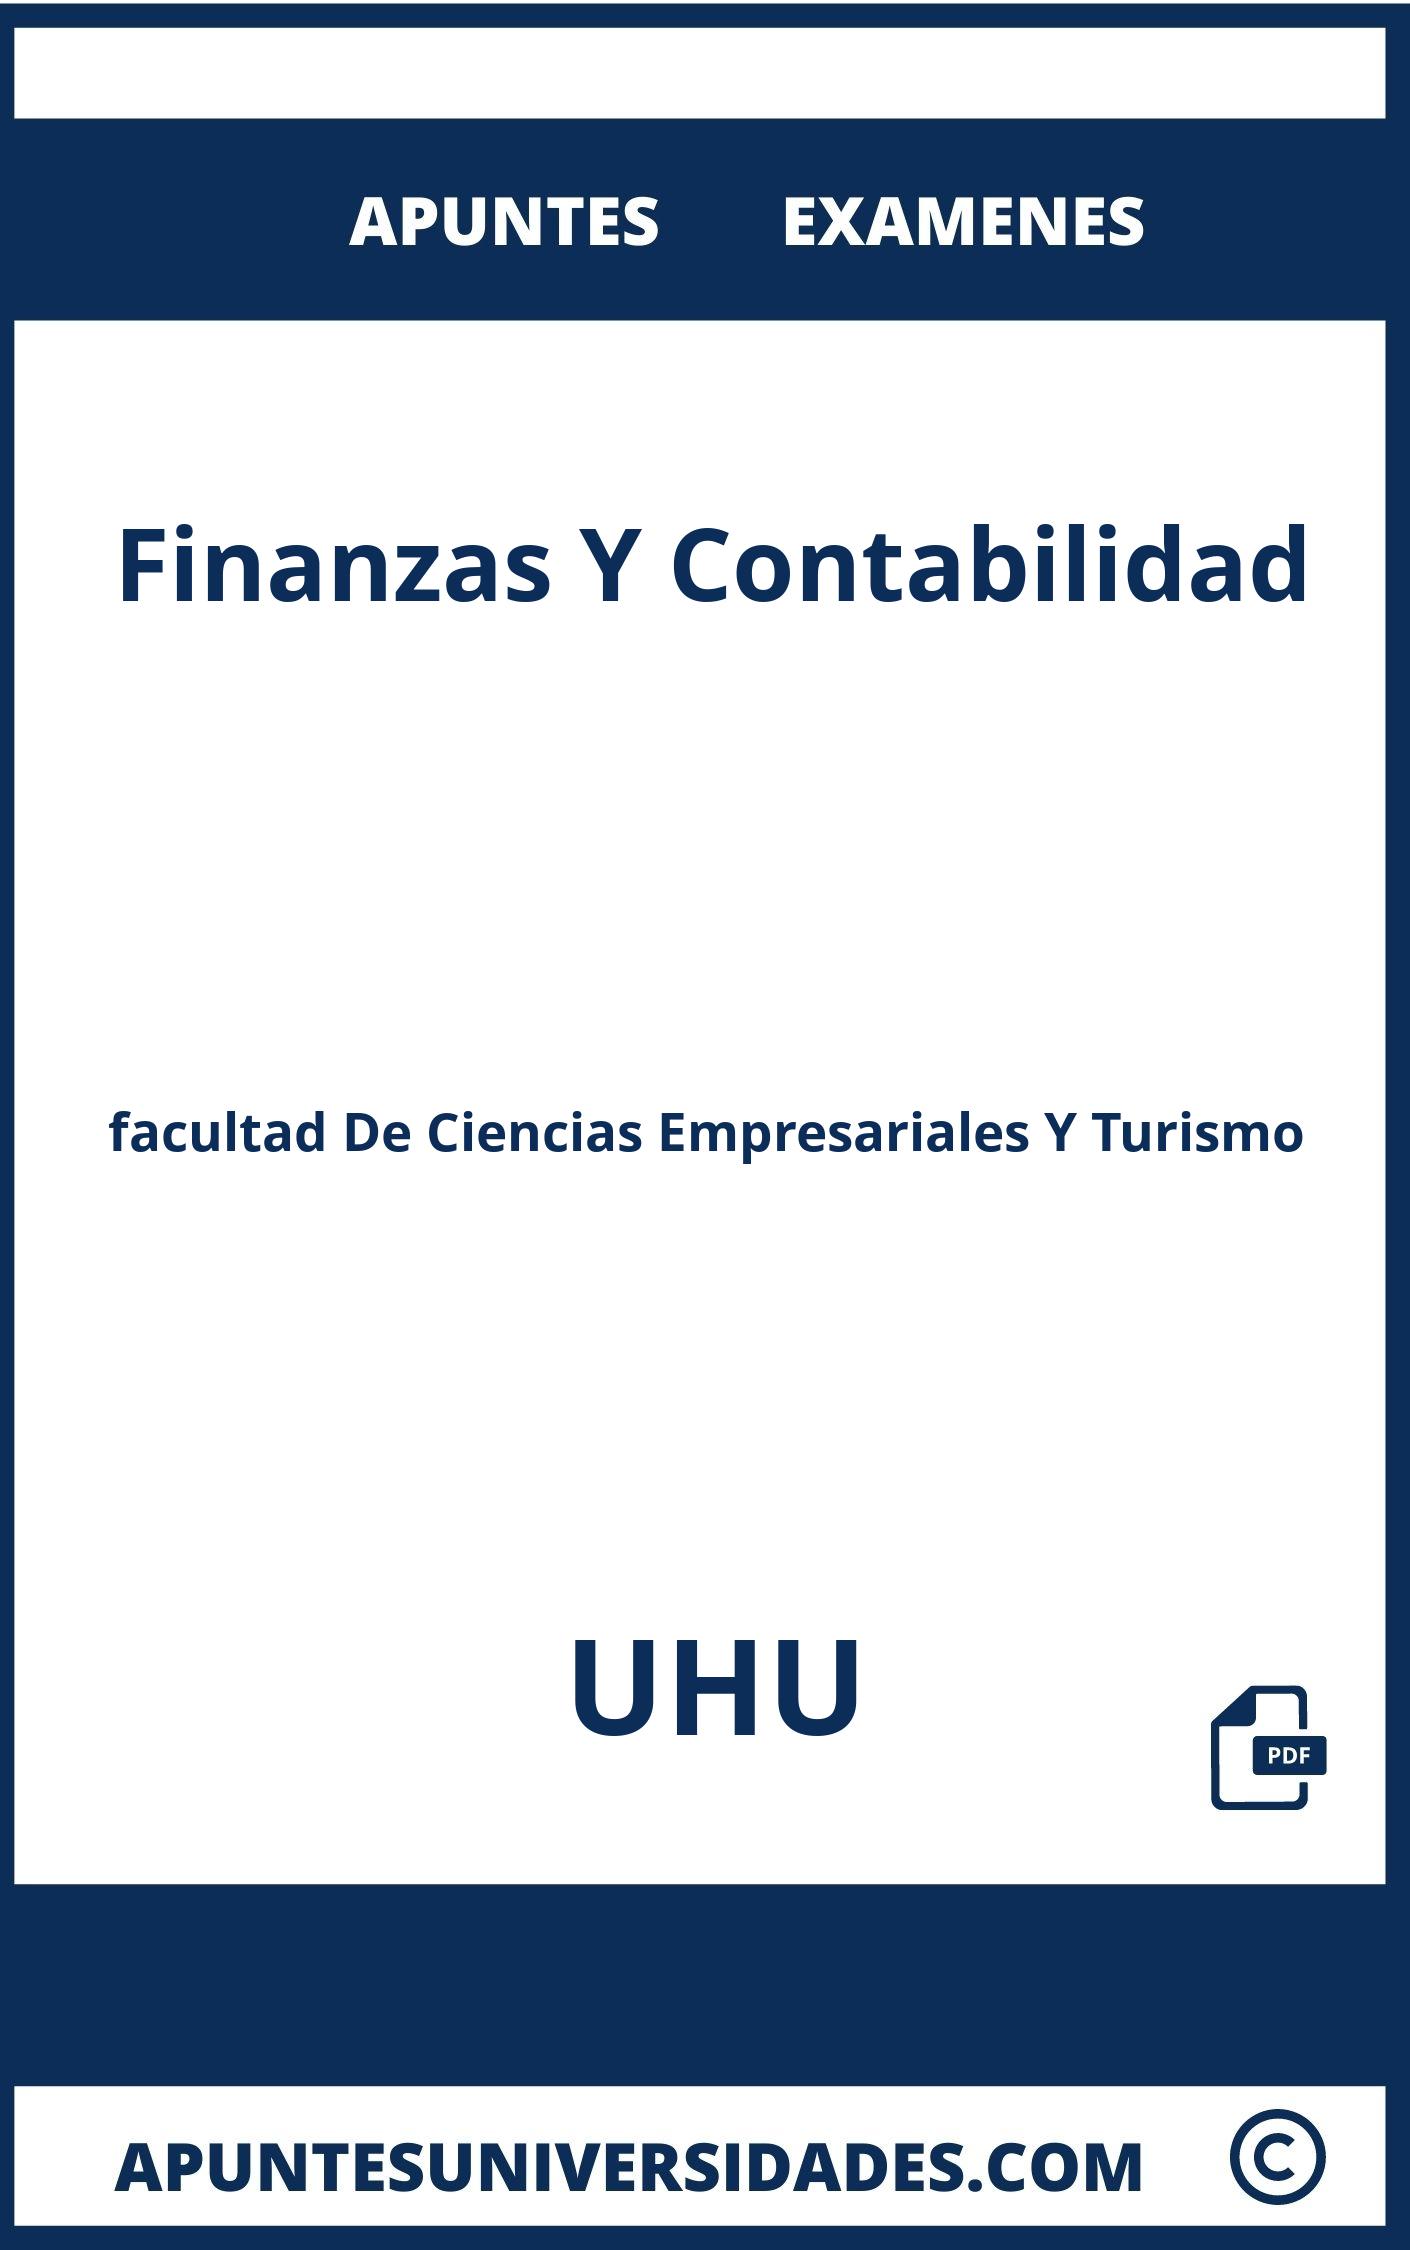 Apuntes Finanzas Y Contabilidad UHU y Examenes